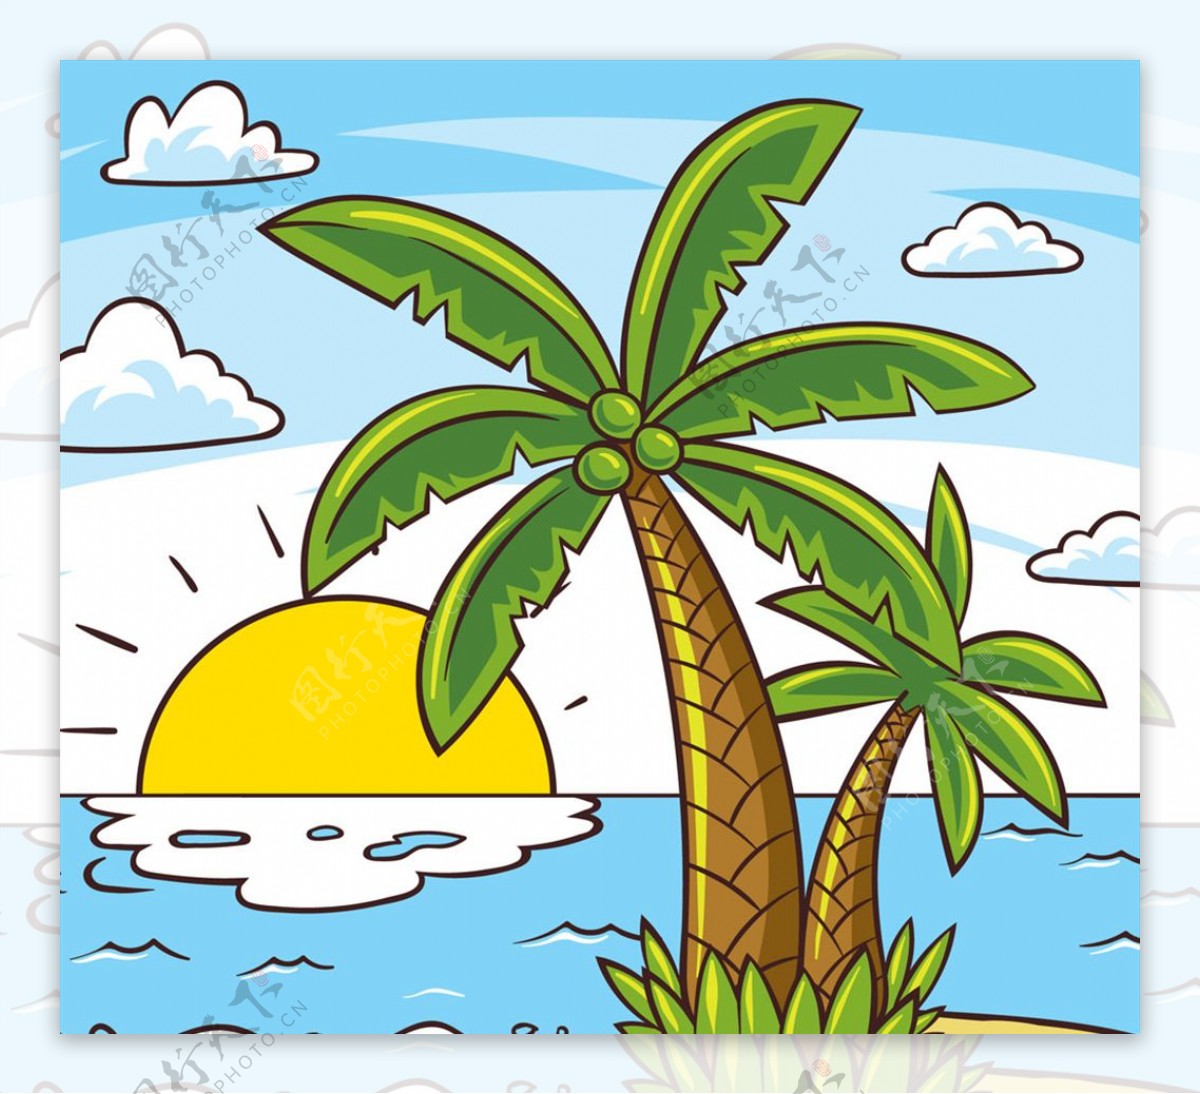 彩绘椰子树大海风景矢量素材